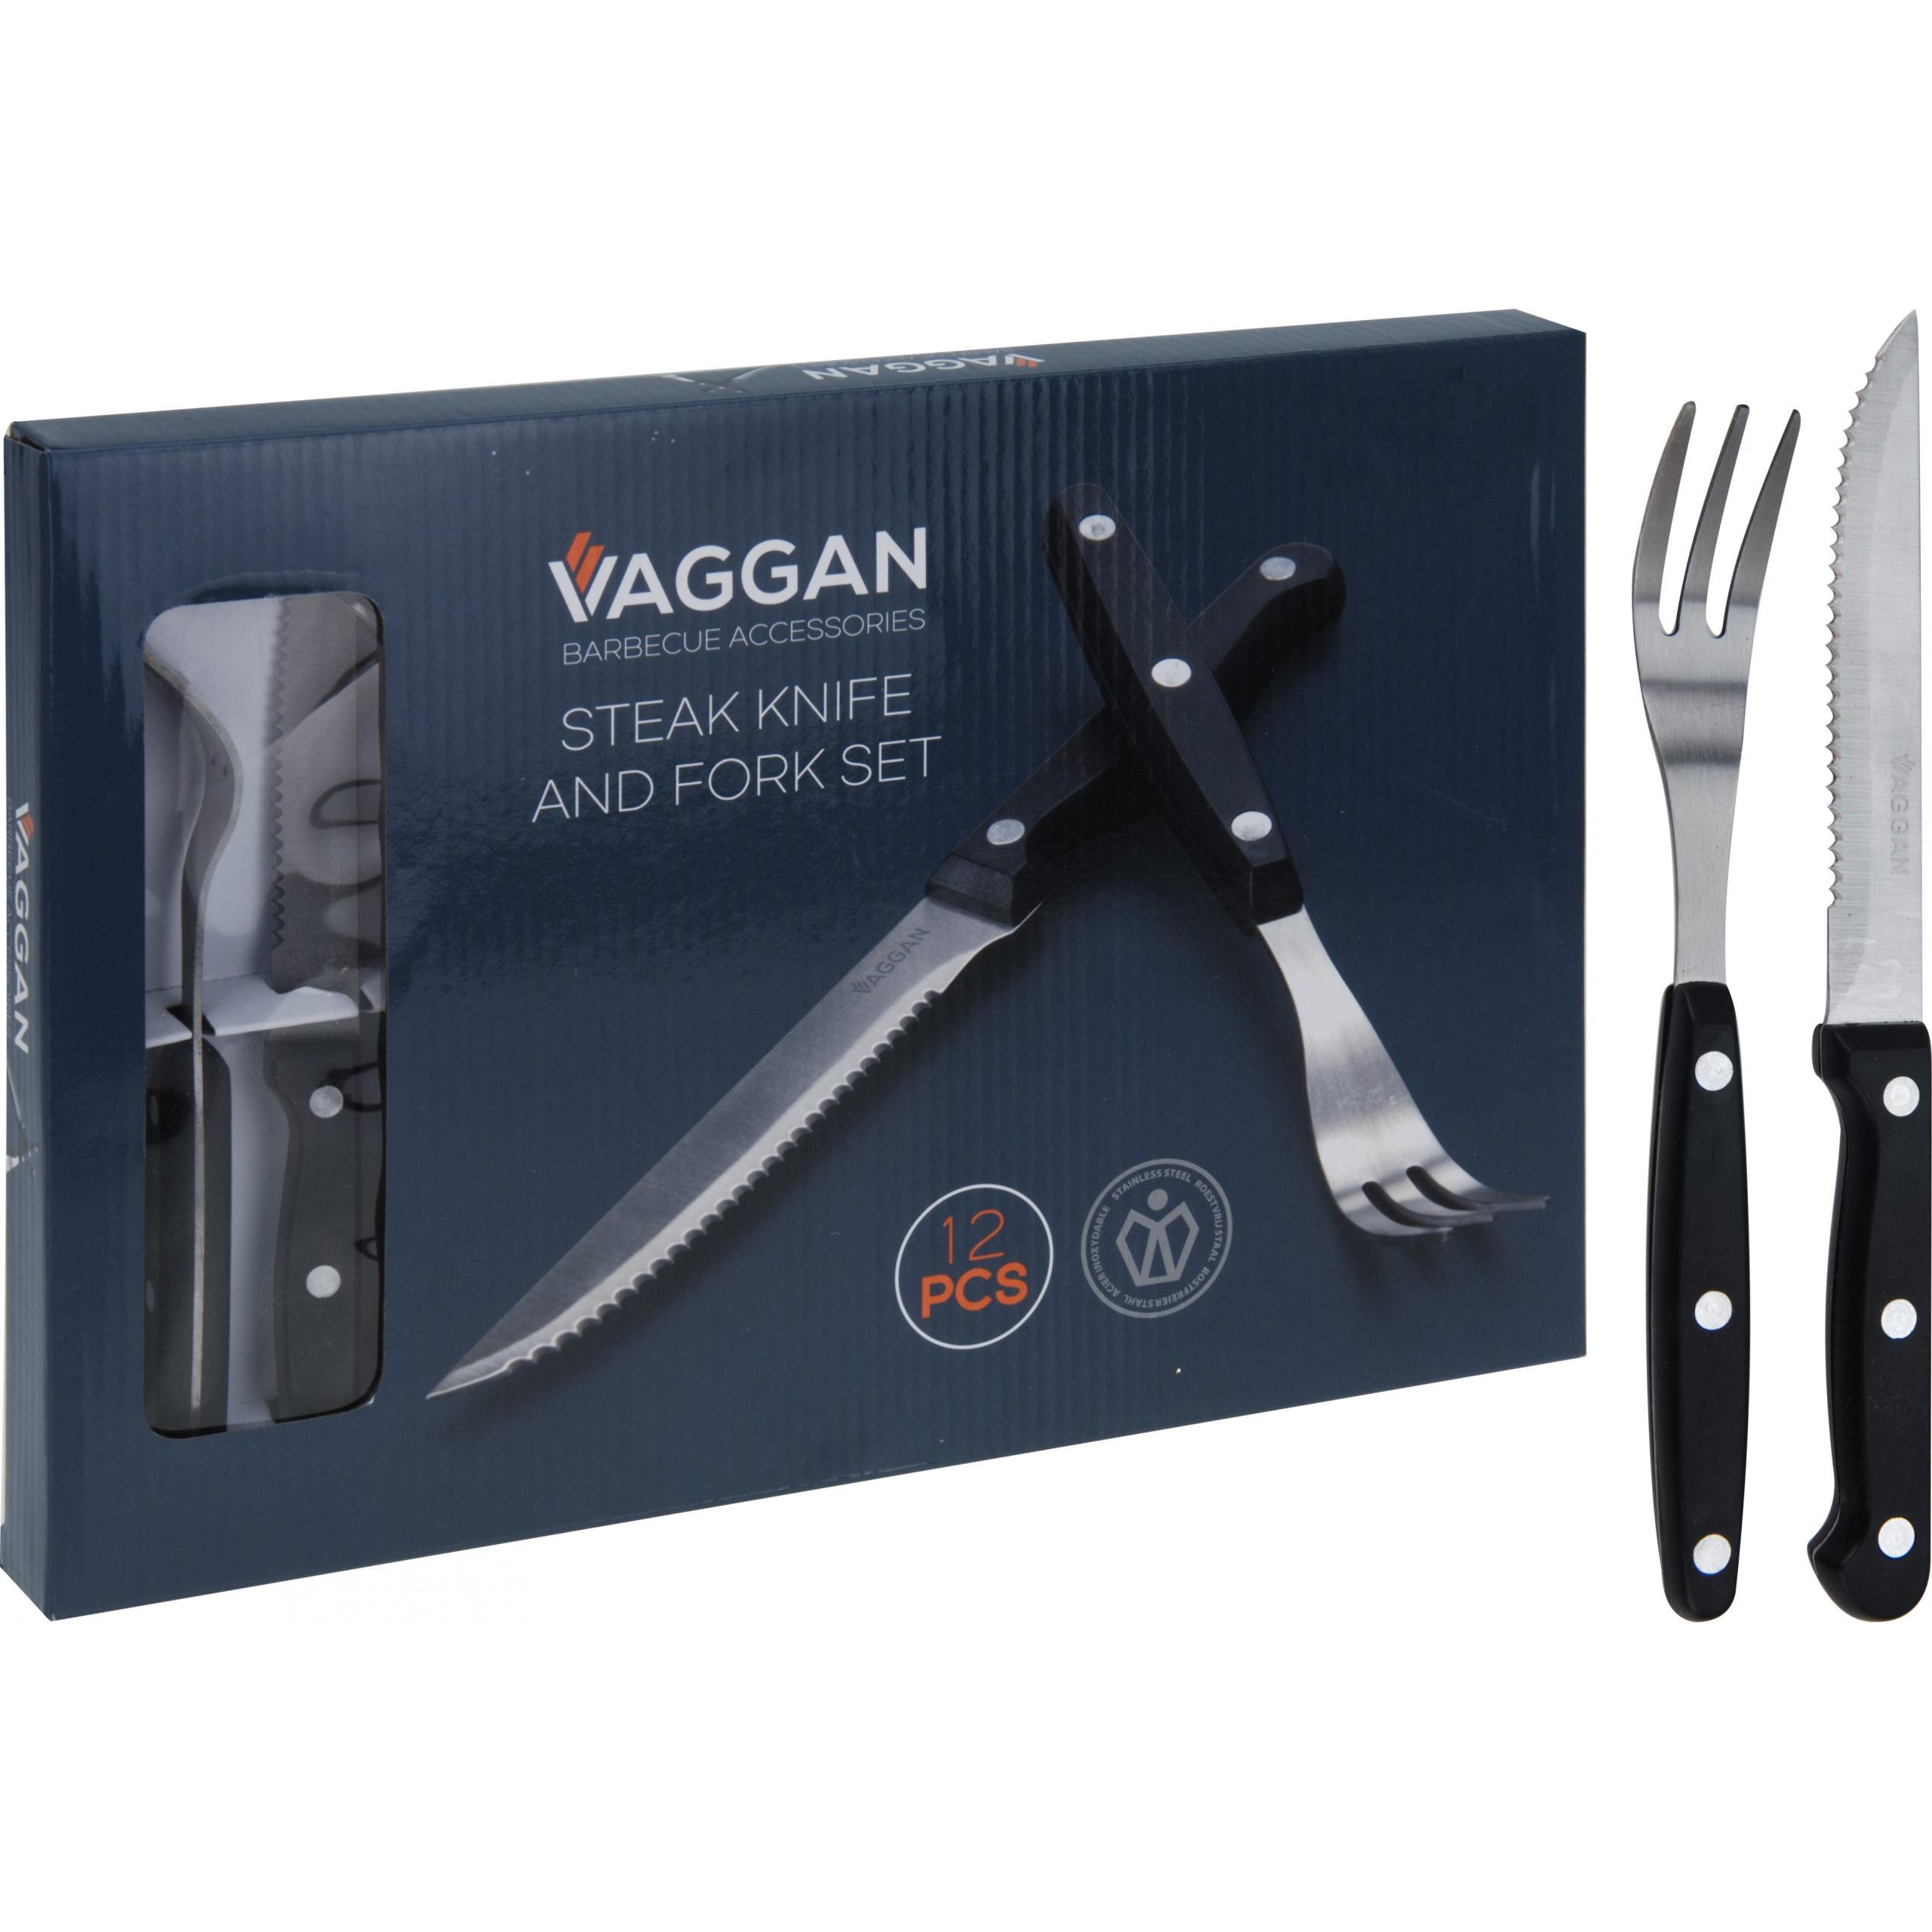 VAGGAN STEAK KNIFE AND FORK SET 12PCS